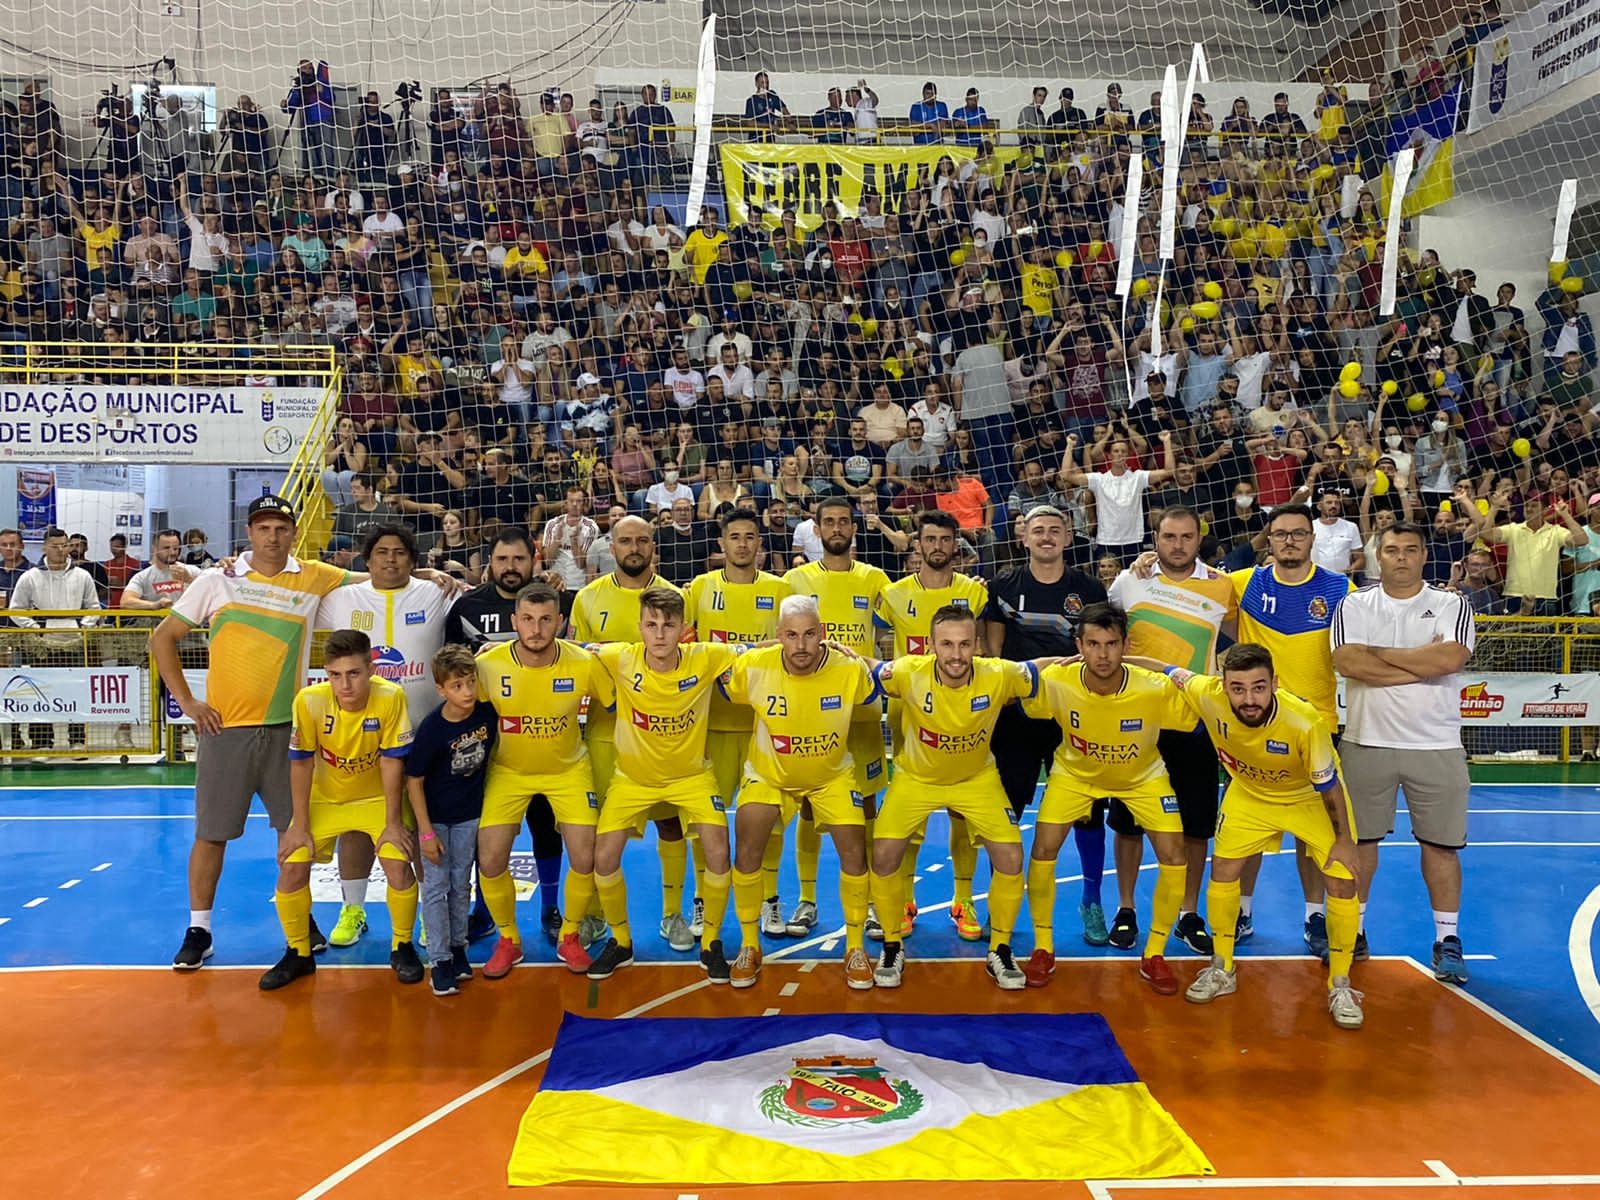 Rede Web TV Esporte terá programa especial nesta segunda (31) sobre título inédito do Taió Futsal no Torneio de Verão